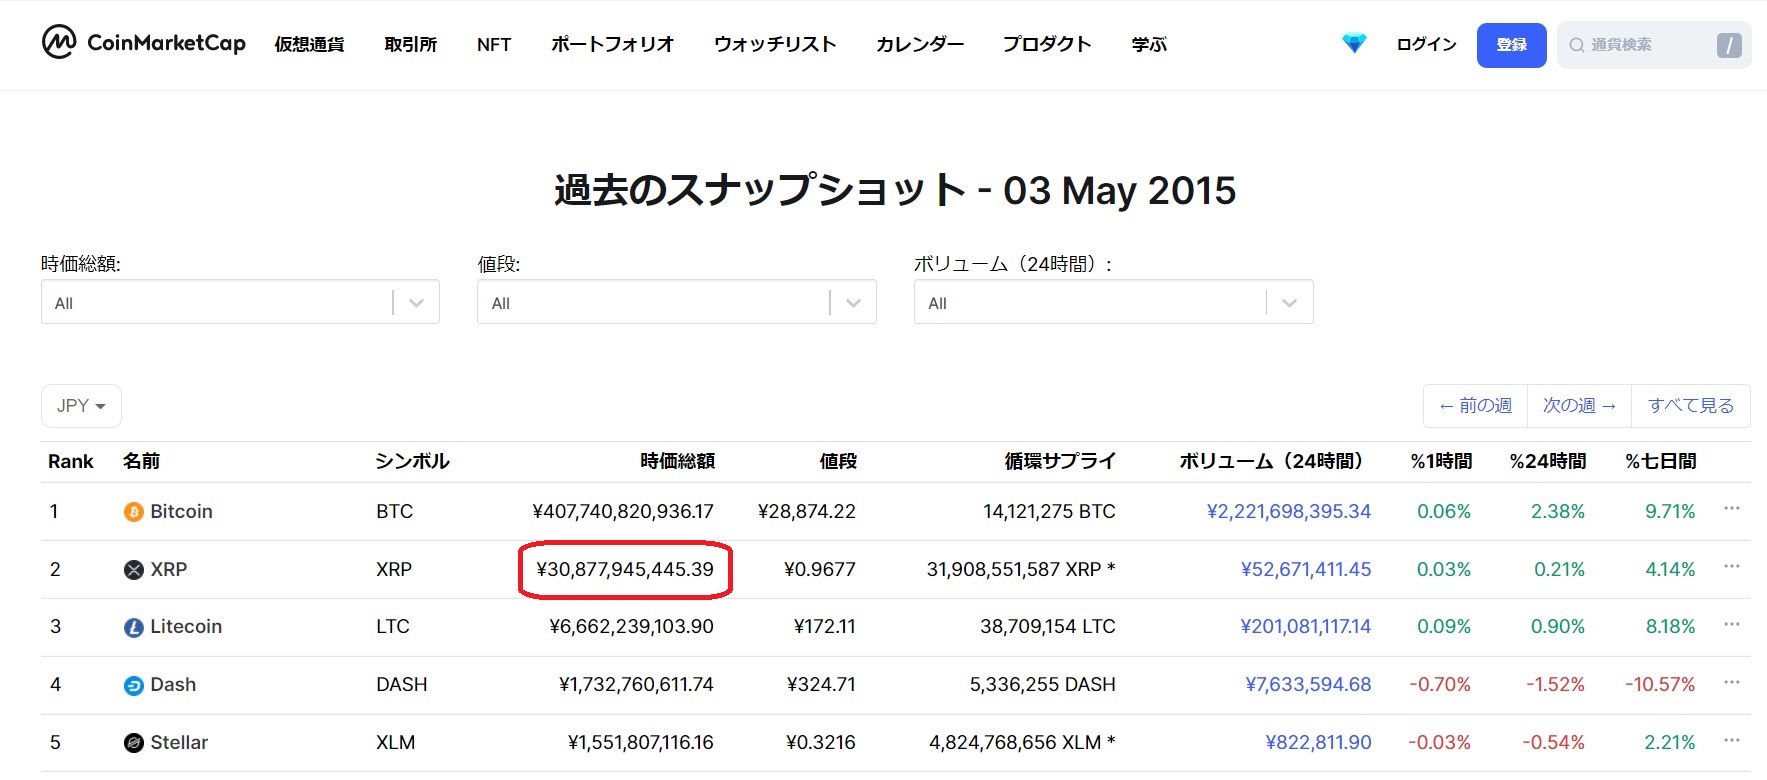 2015年5月3日の上位TOP5の仮想通貨のスナップショット